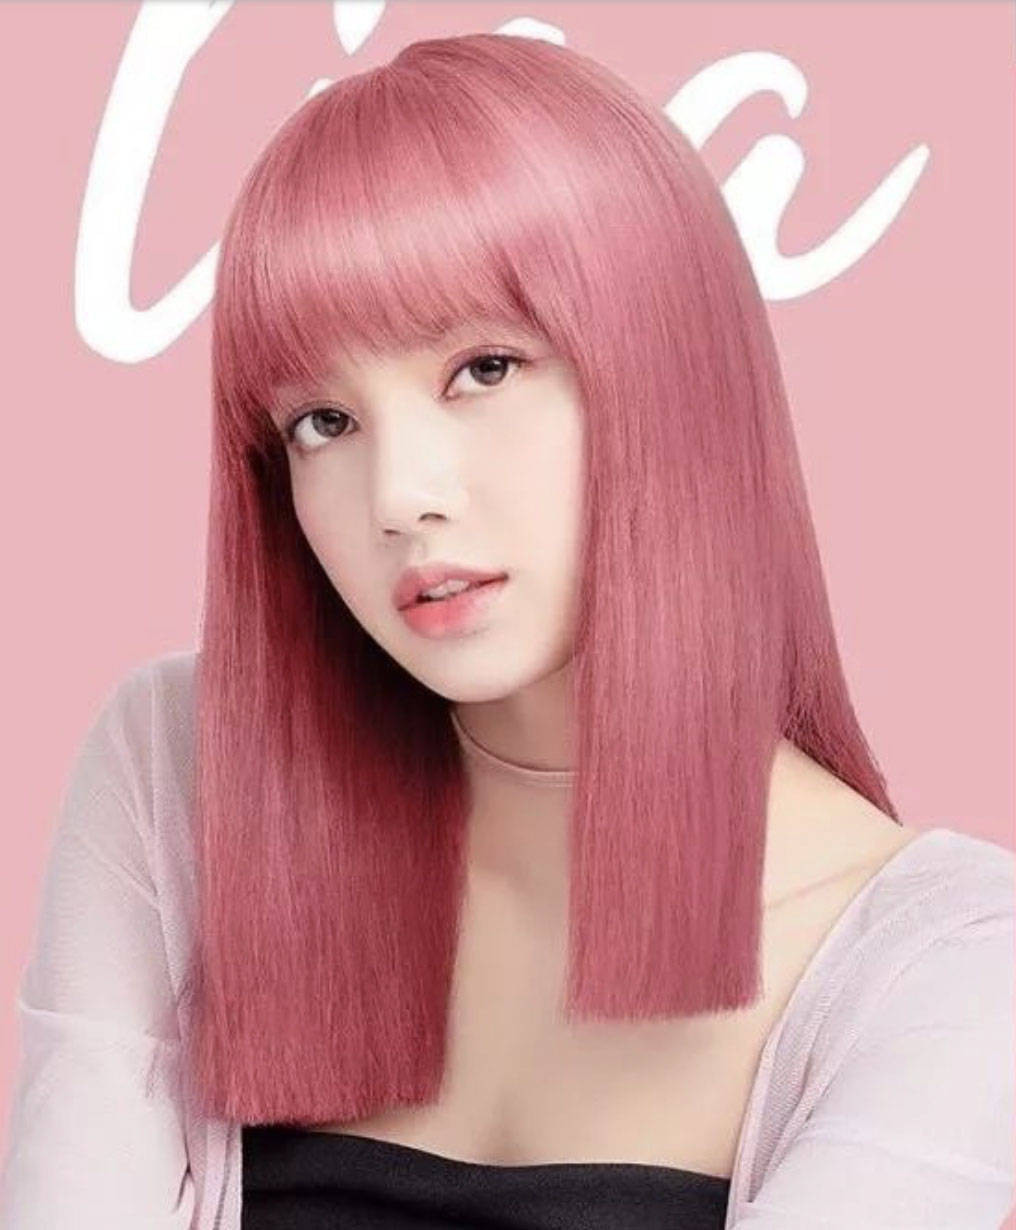 原创2020年最火的神仙发色,叫樱花粉发色,lisa染了后简直美了